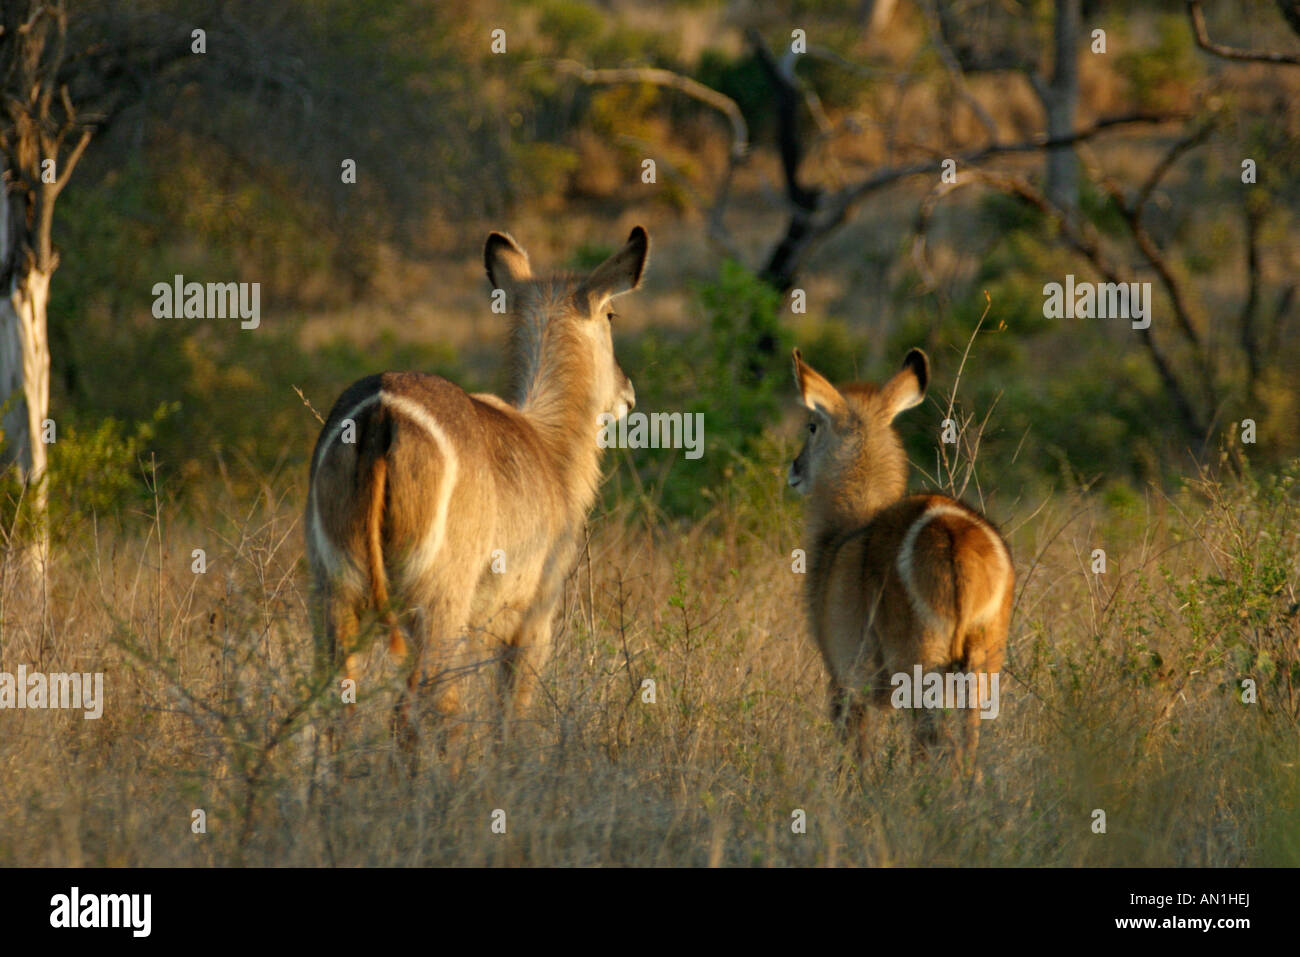 Vista trasera de un par de antelope mostrando su anillo de diagnóstico marcado en sus nalgas Foto de stock